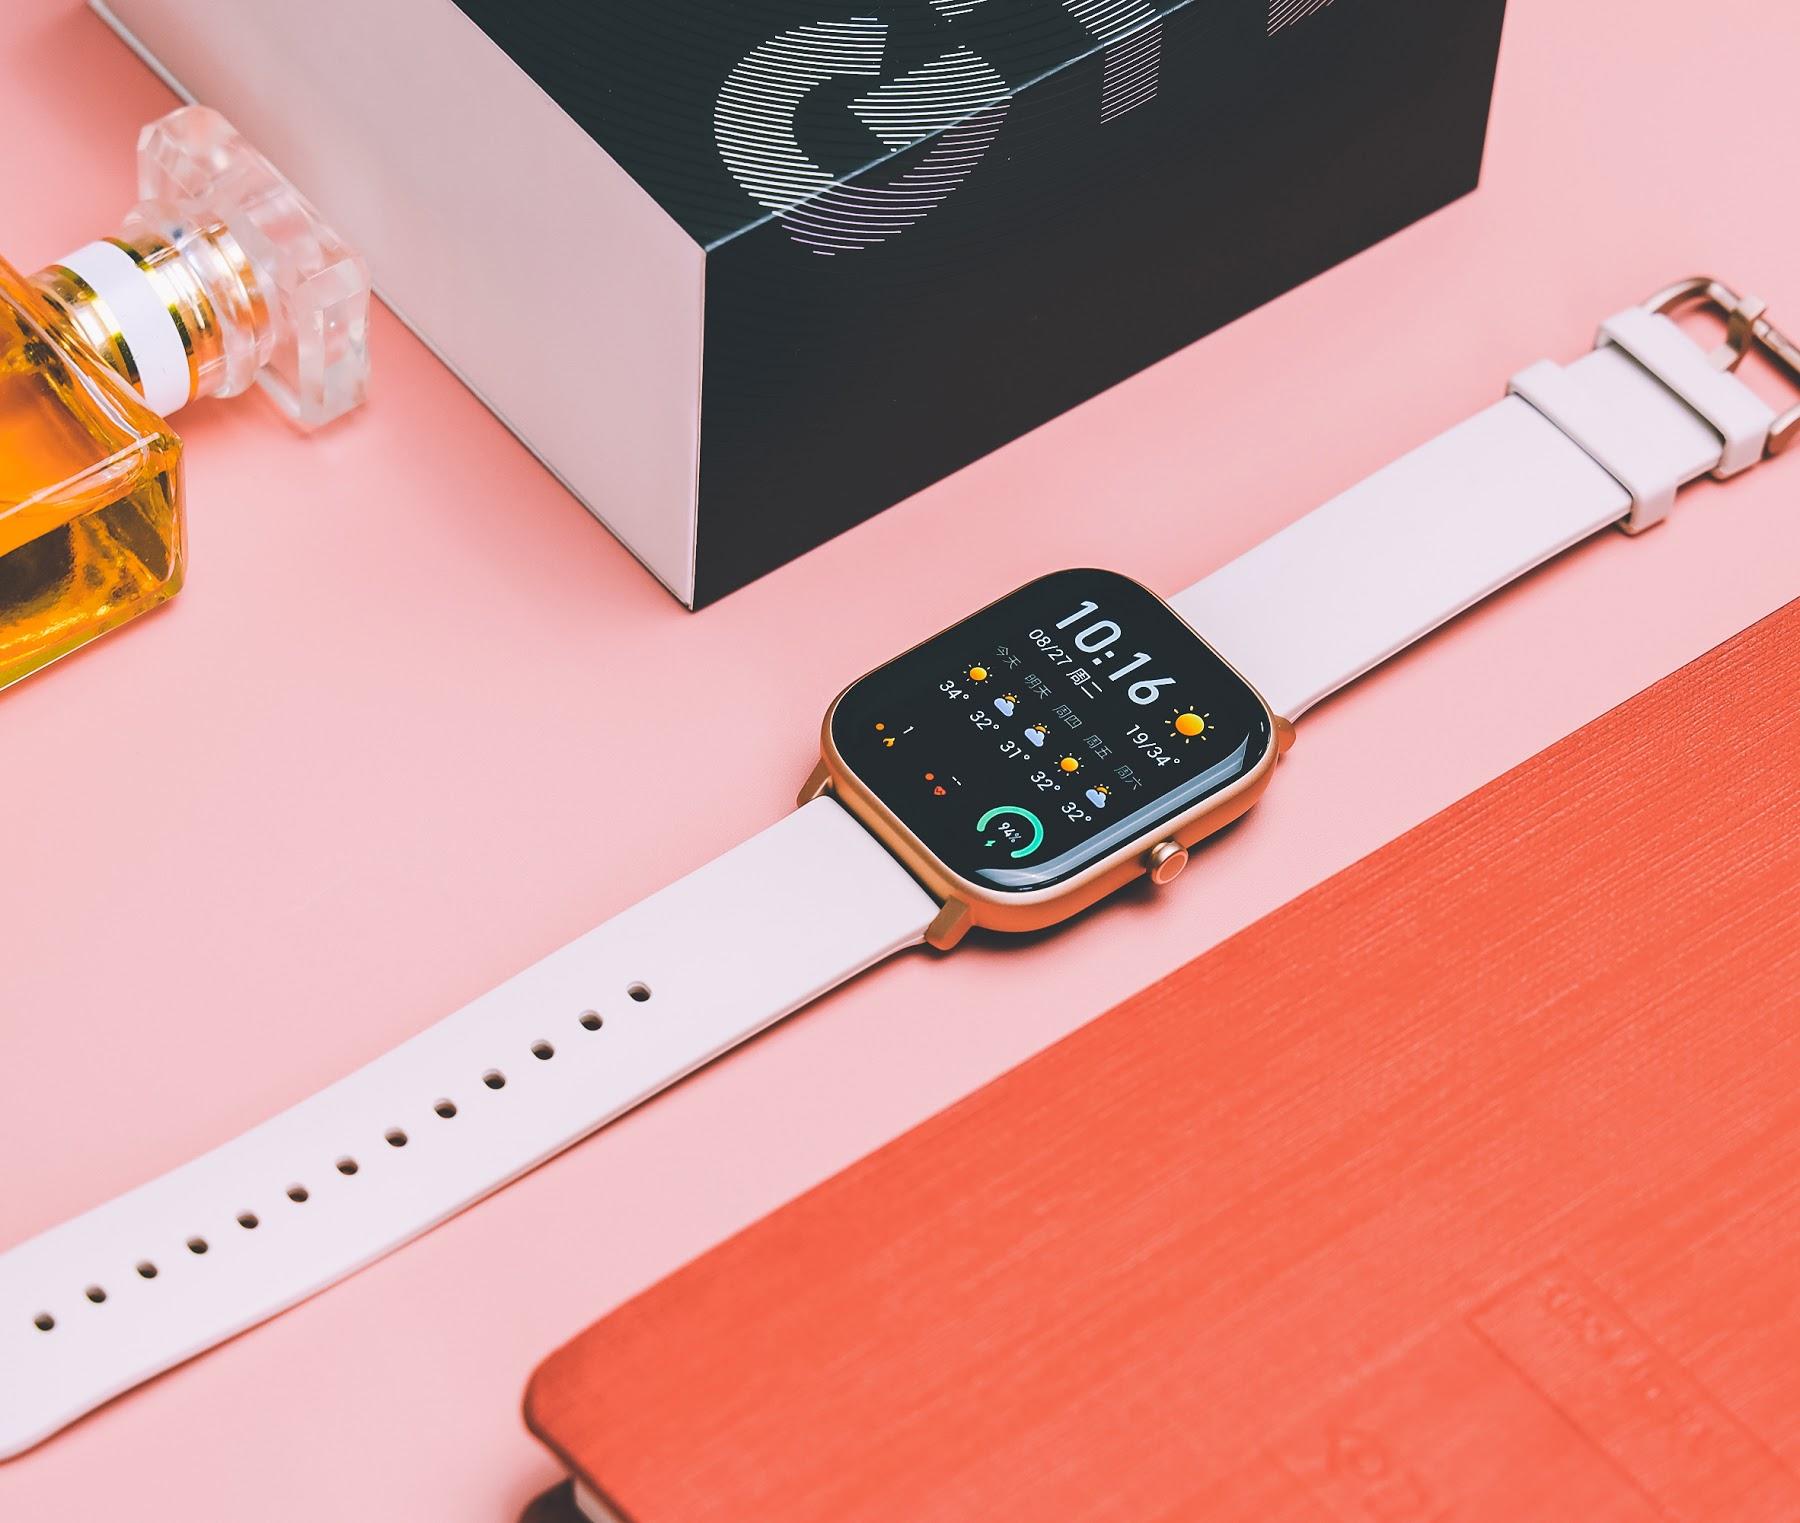 Đồng hồ thông minh Amazfit GTS phiên bản quốc tế - Smart Watch Amazfit GTS Global Version